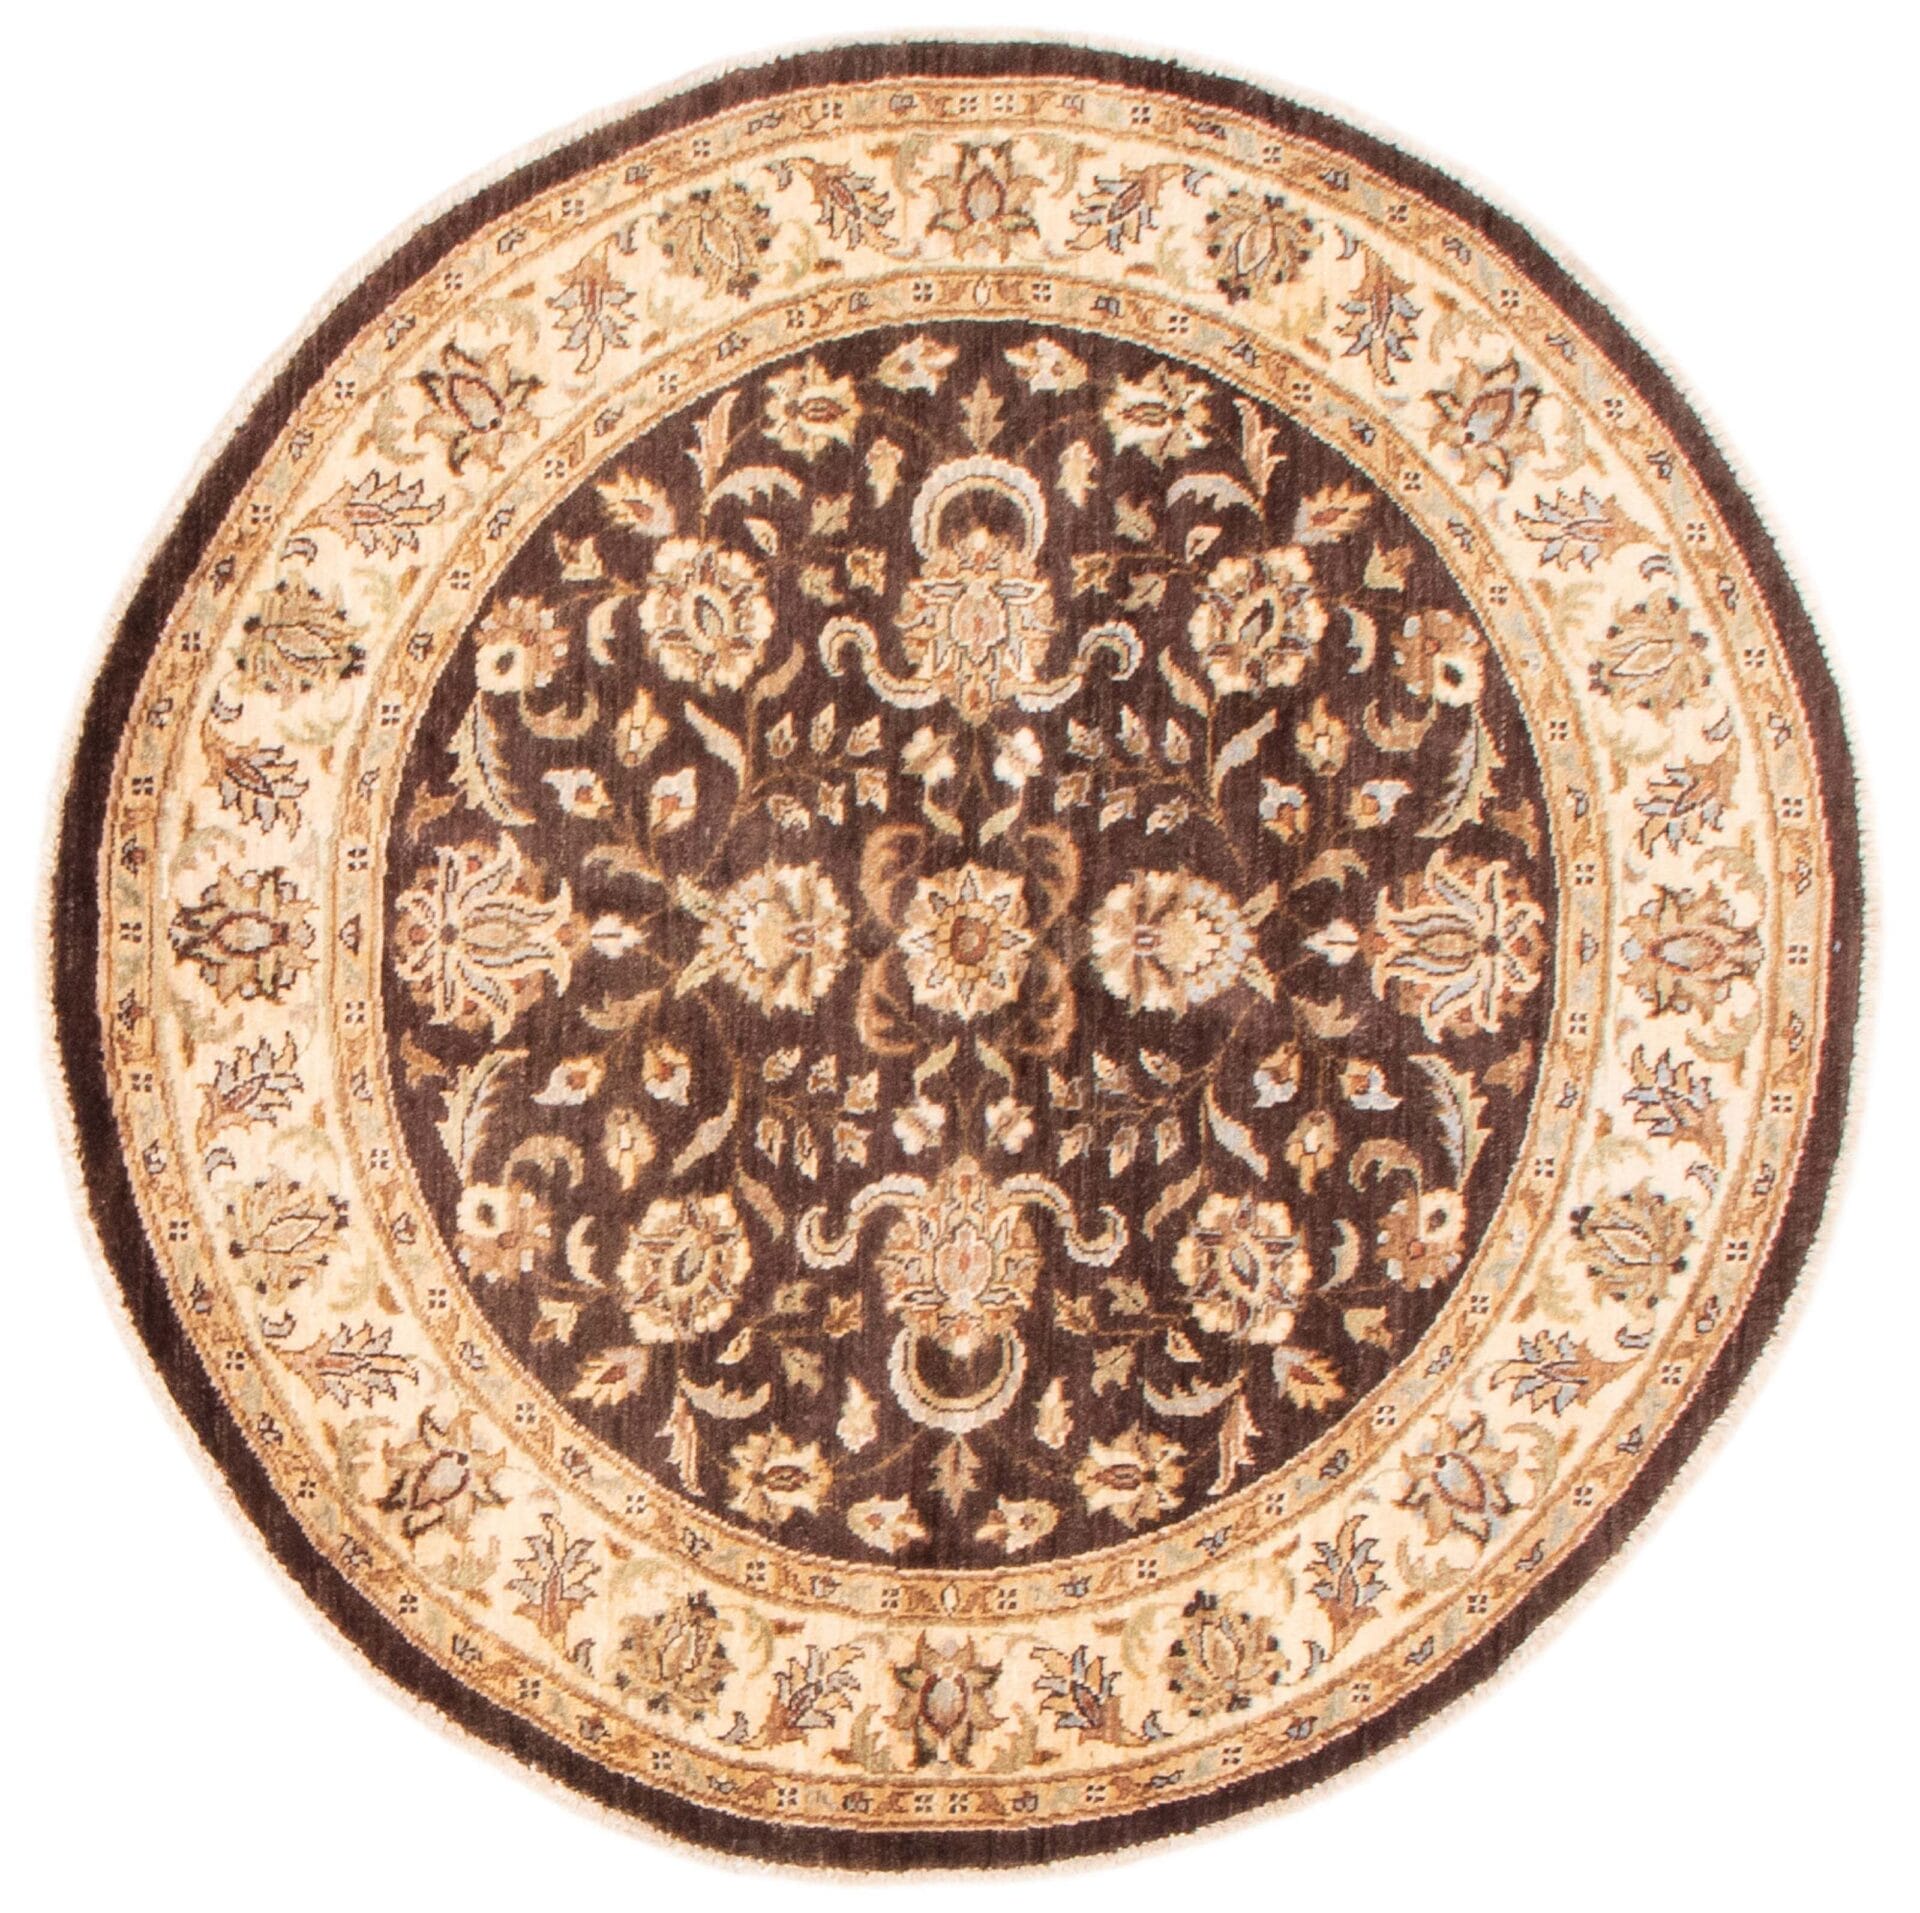 Beschrijving: Een bruin en beige rond tapijt met bloemmotieven.